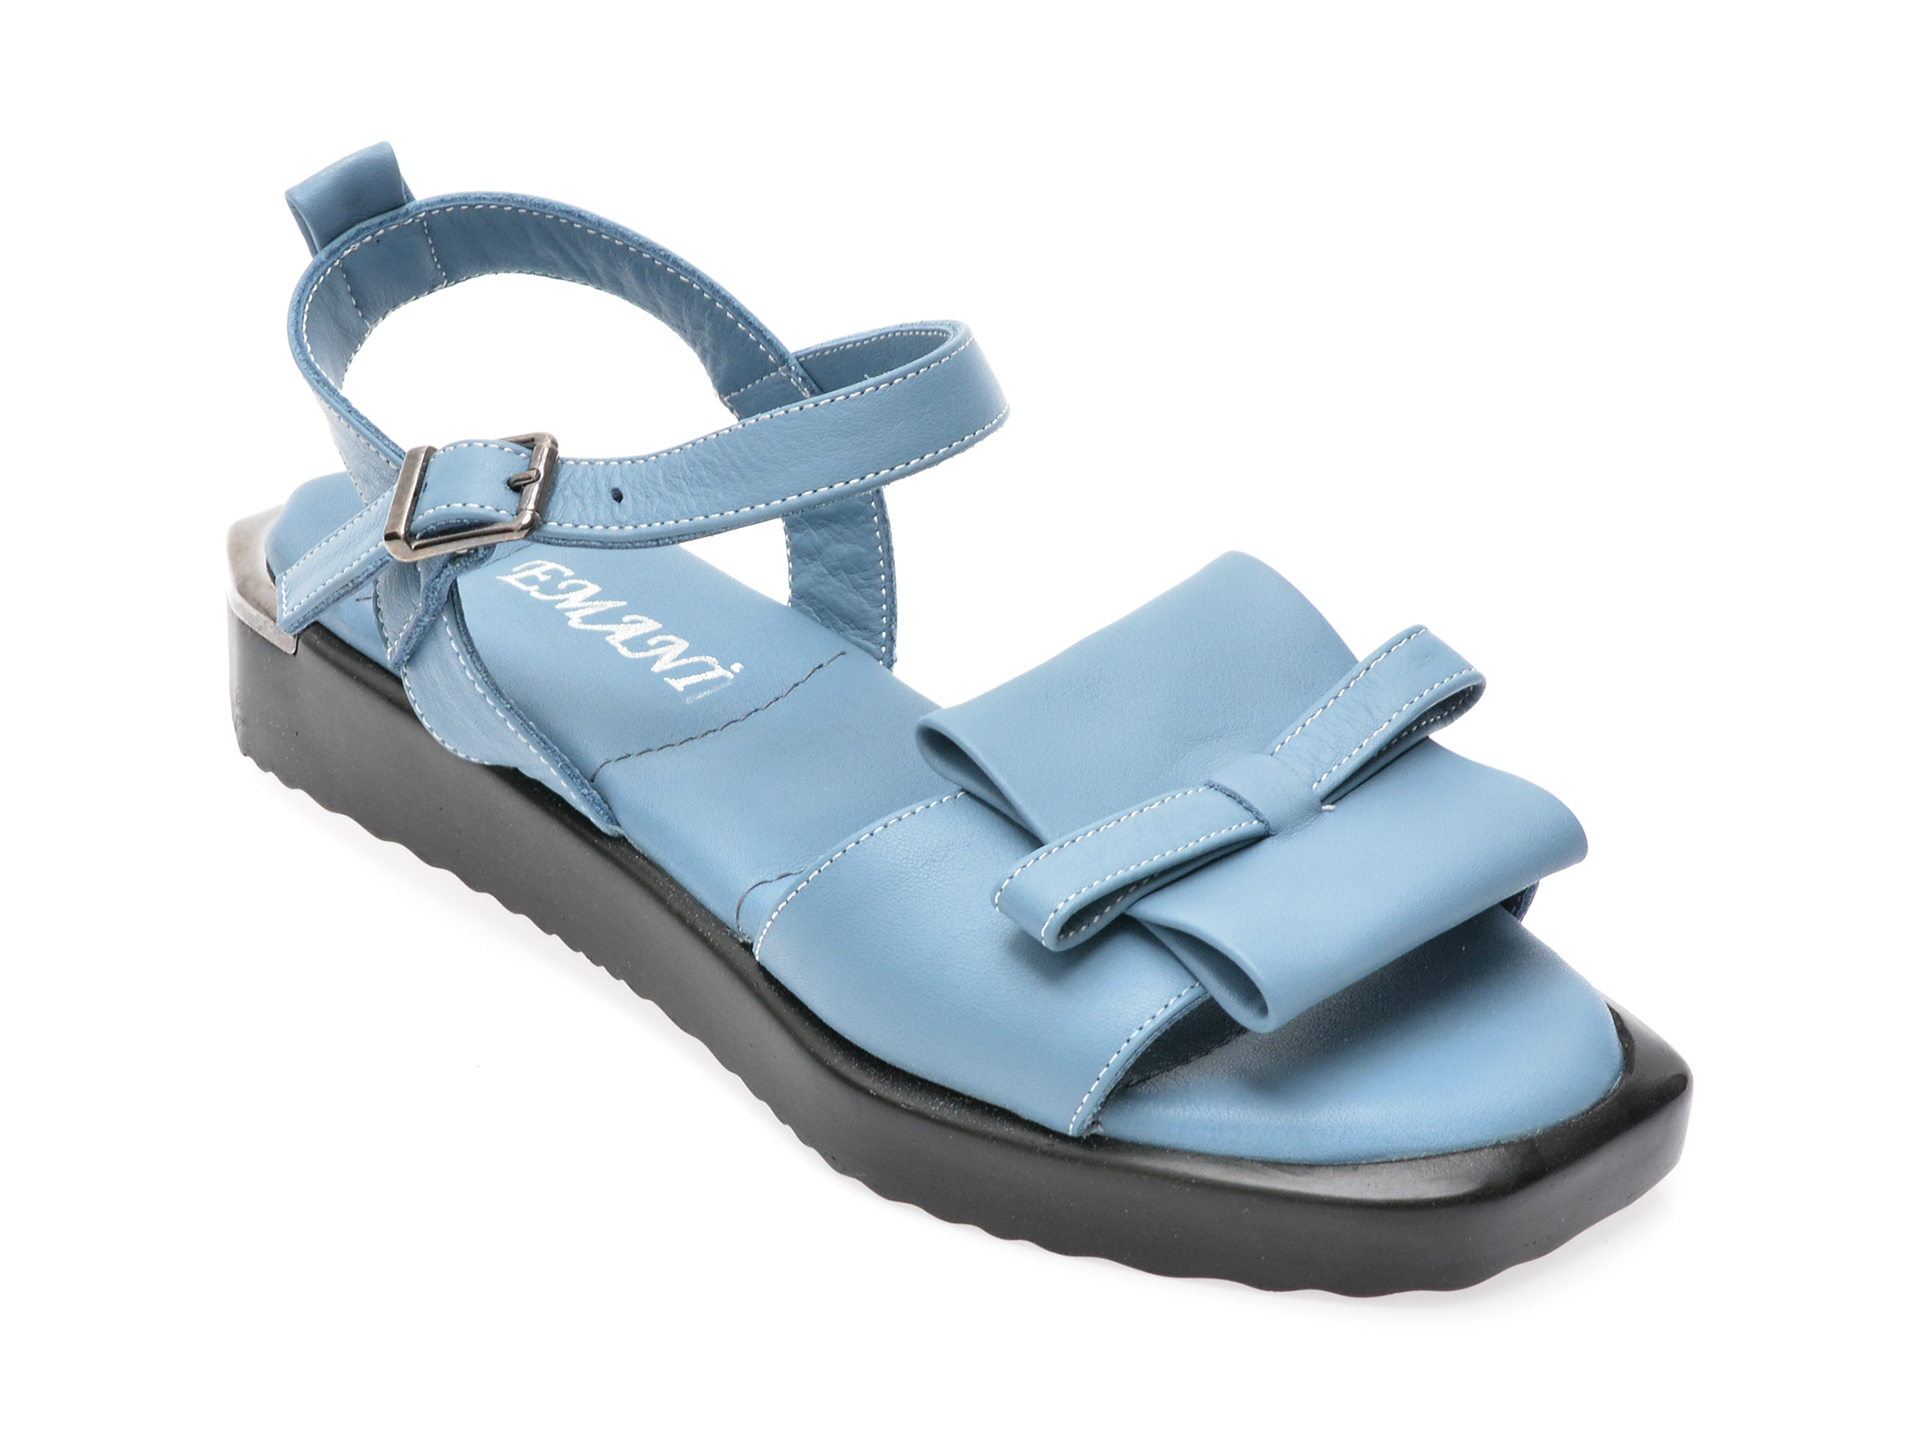 Sandale EMANI albastre, 330, din piele naturala /femei/sandale